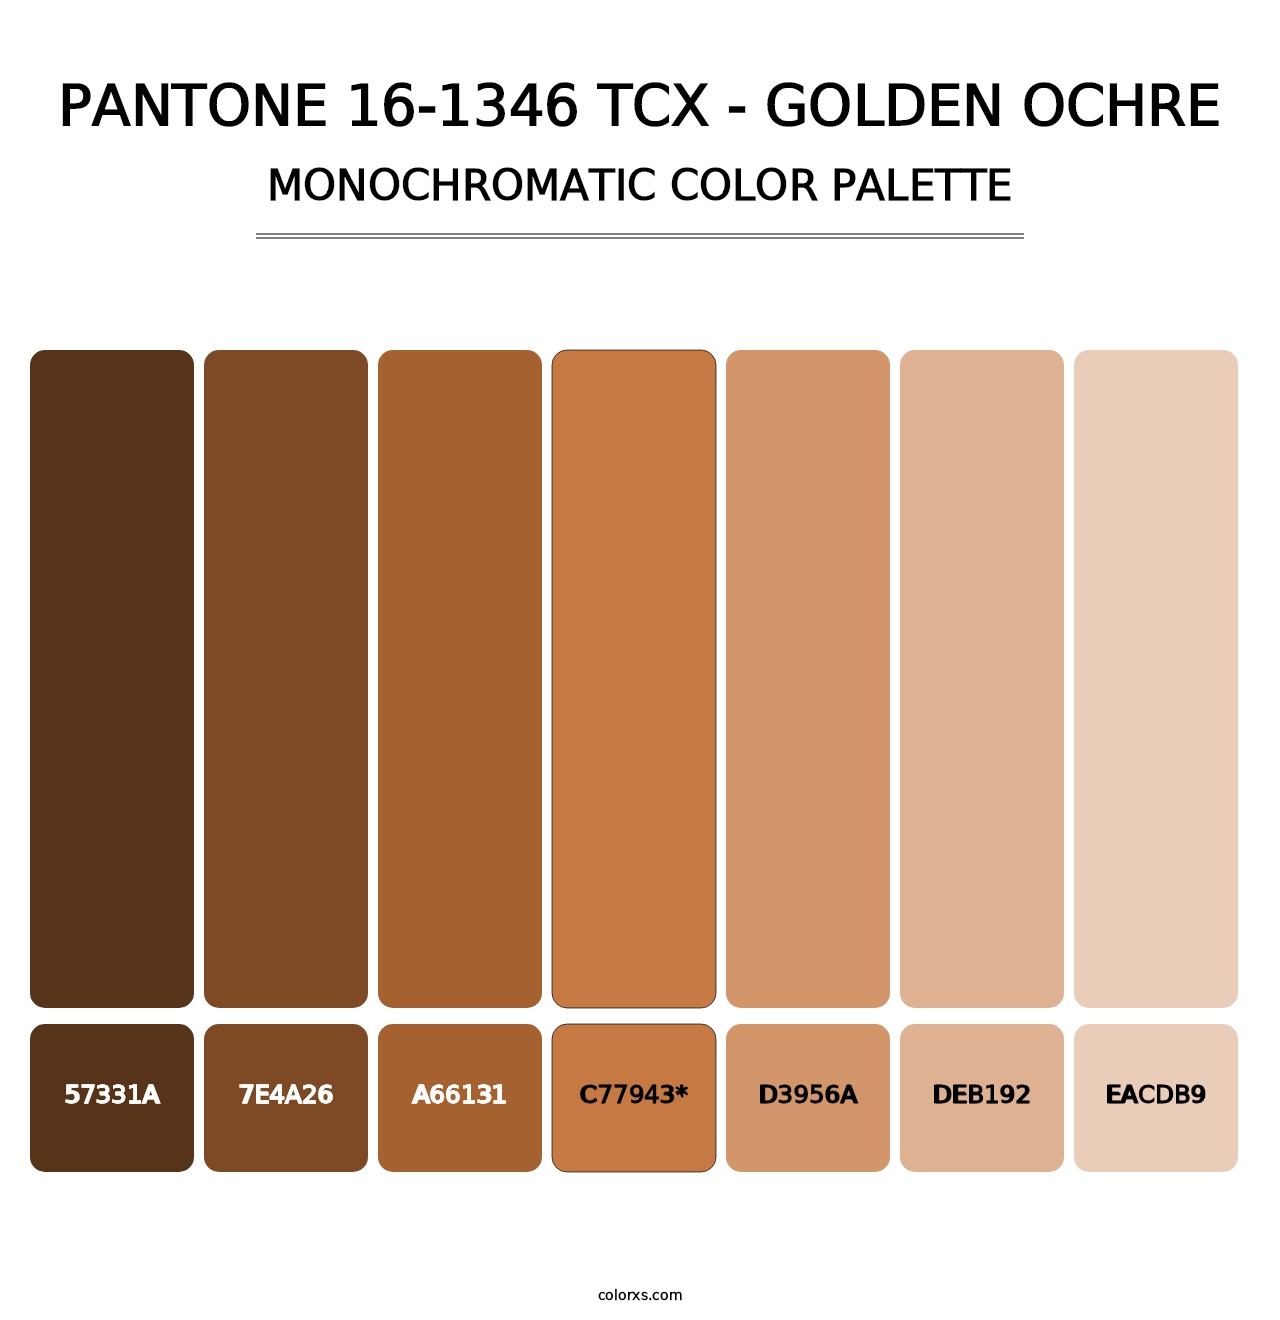 PANTONE 16-1346 TCX - Golden Ochre - Monochromatic Color Palette